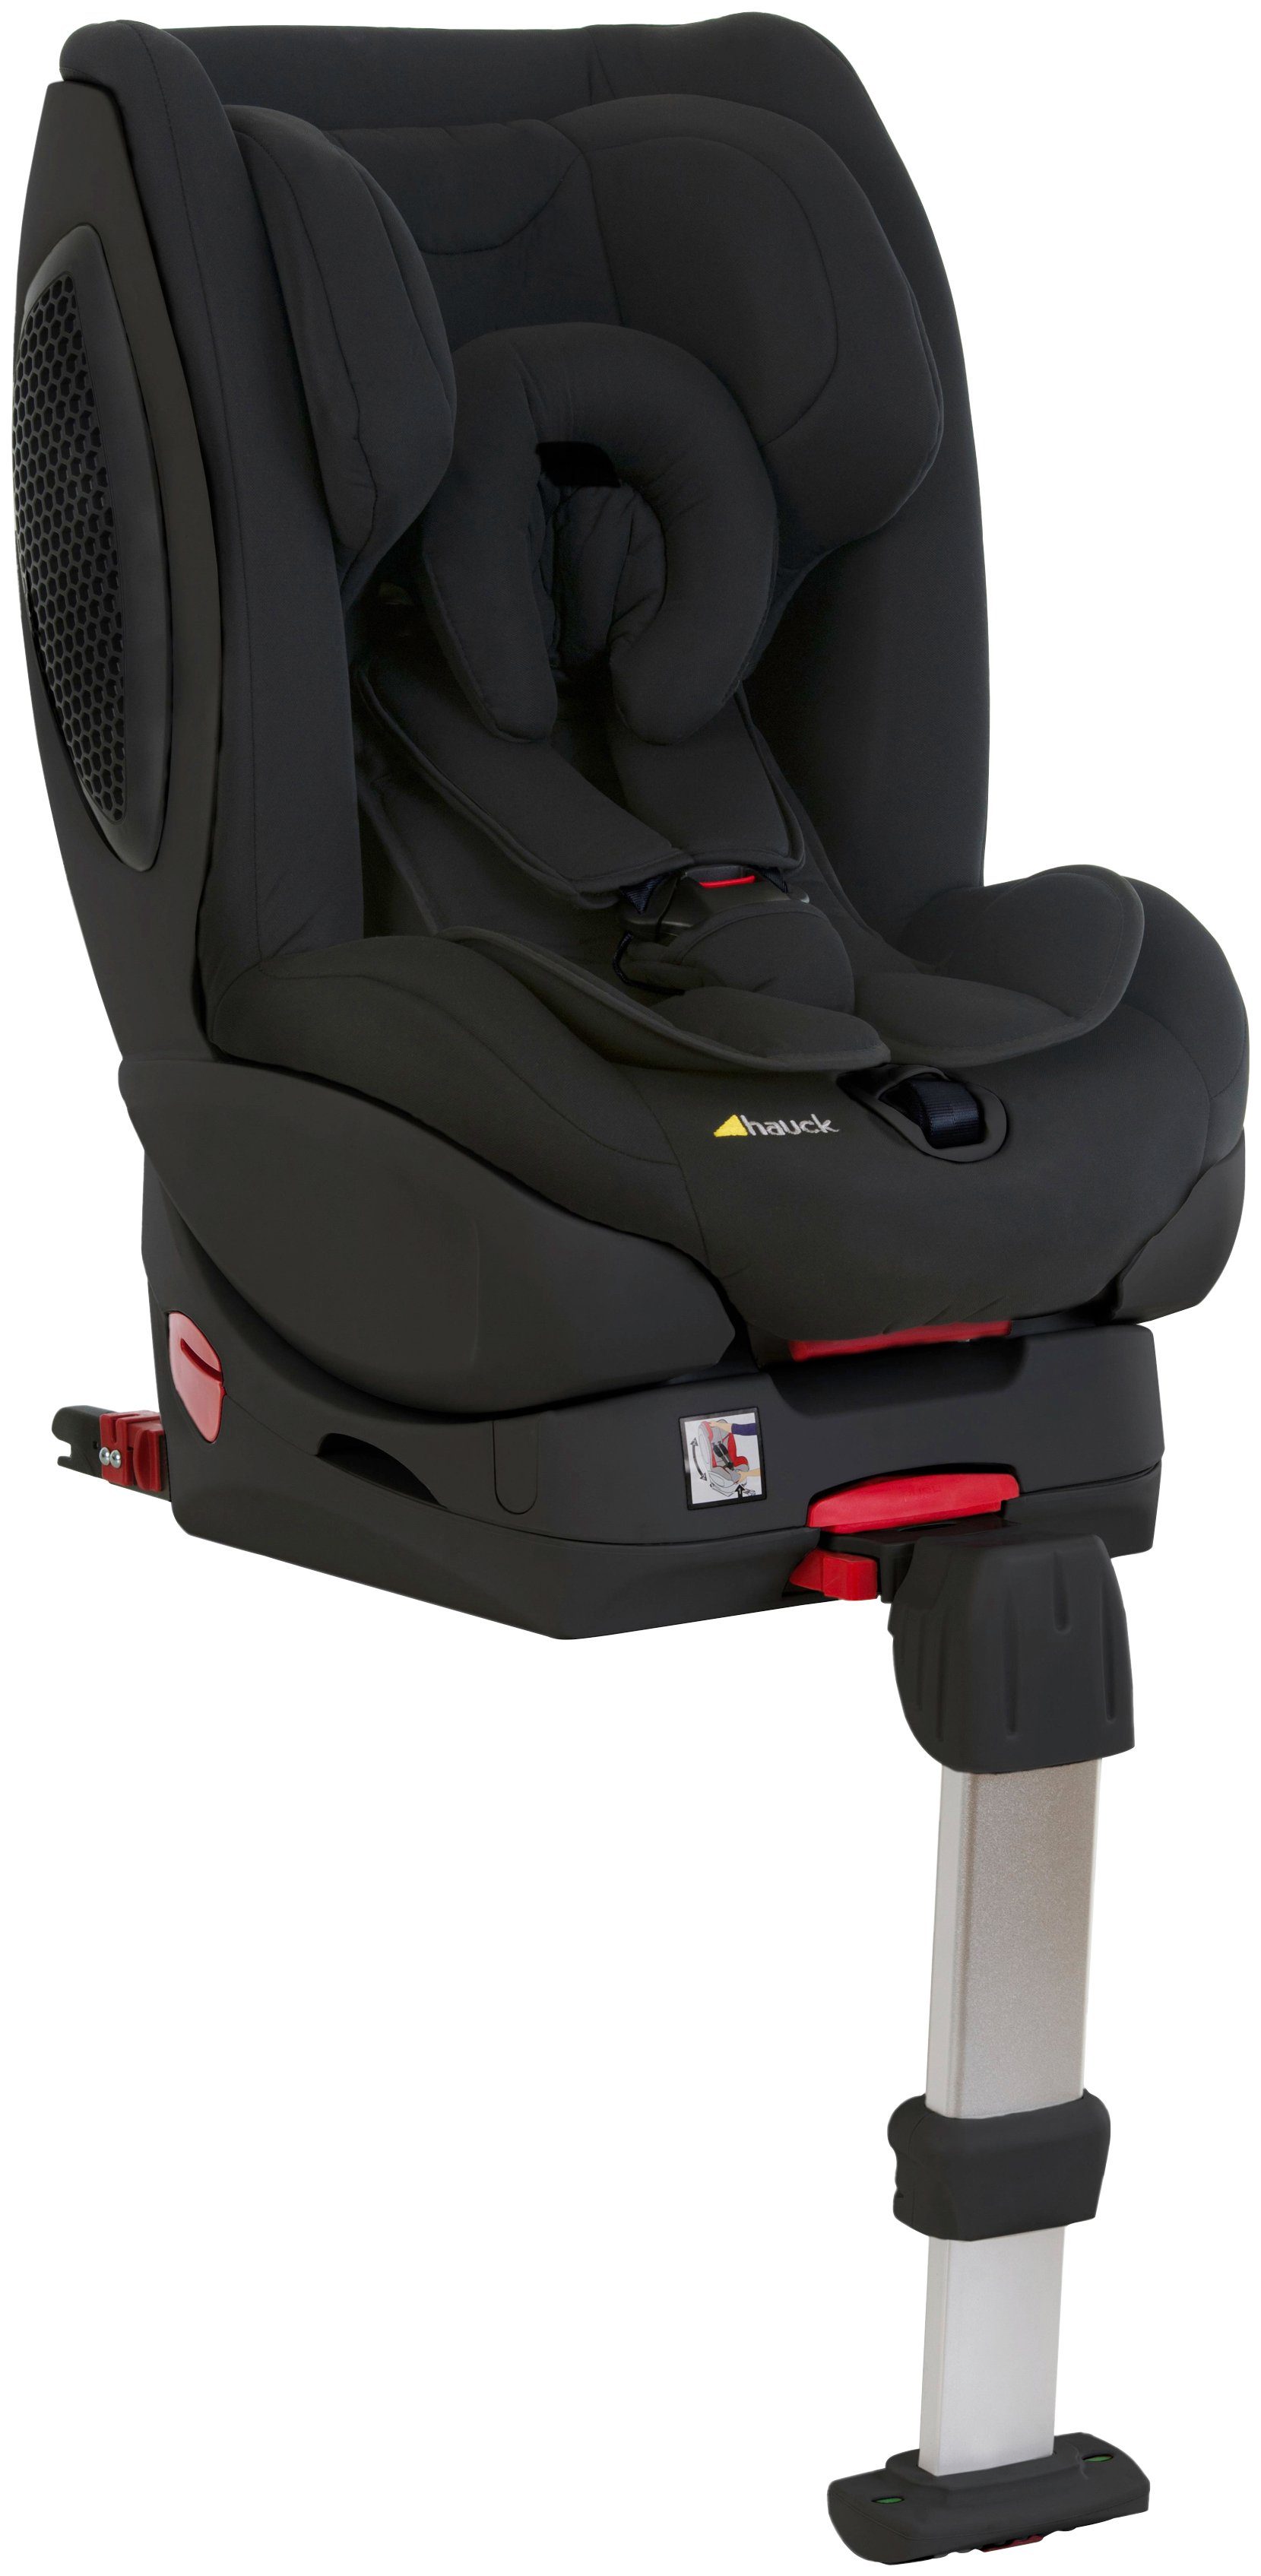 Hauck Autokindersitz »Hauck Reboard-Kindersitz Varioguard Plus inkl. Iso«